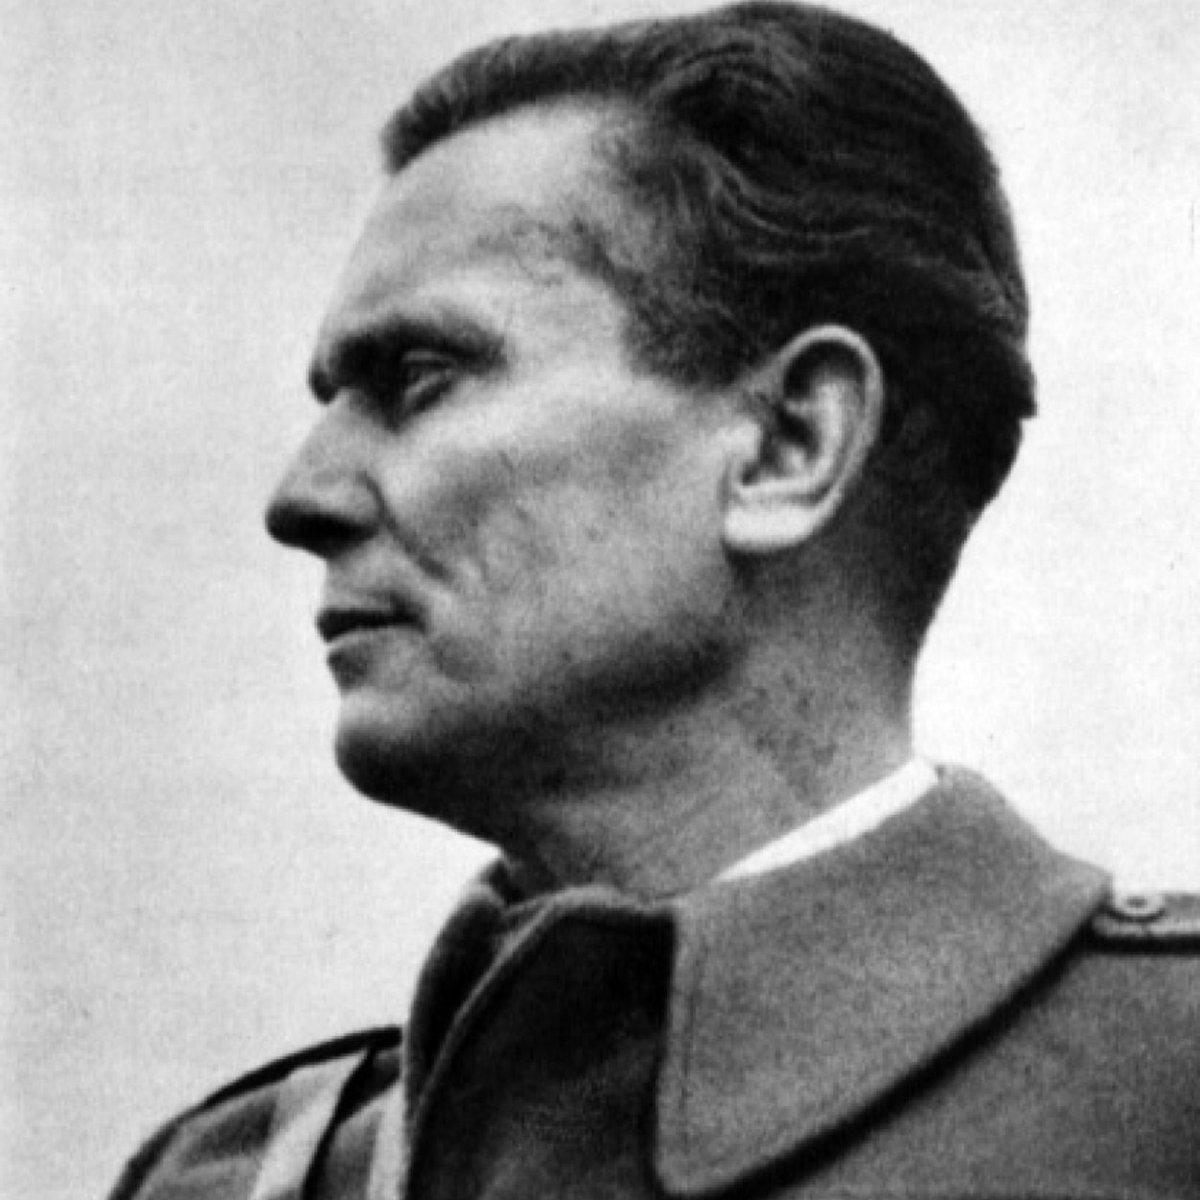 Pourquoi ? Josip Broz Tito a rétabli en 1945 la Yougoslavie (République socialiste fédérative de Yougoslavie), composé de 6 républiques.Durant près de 40 ans, cette fédération sera maintenue d'une main de fer par Tito, qui réprimera fortement les nationalismes.